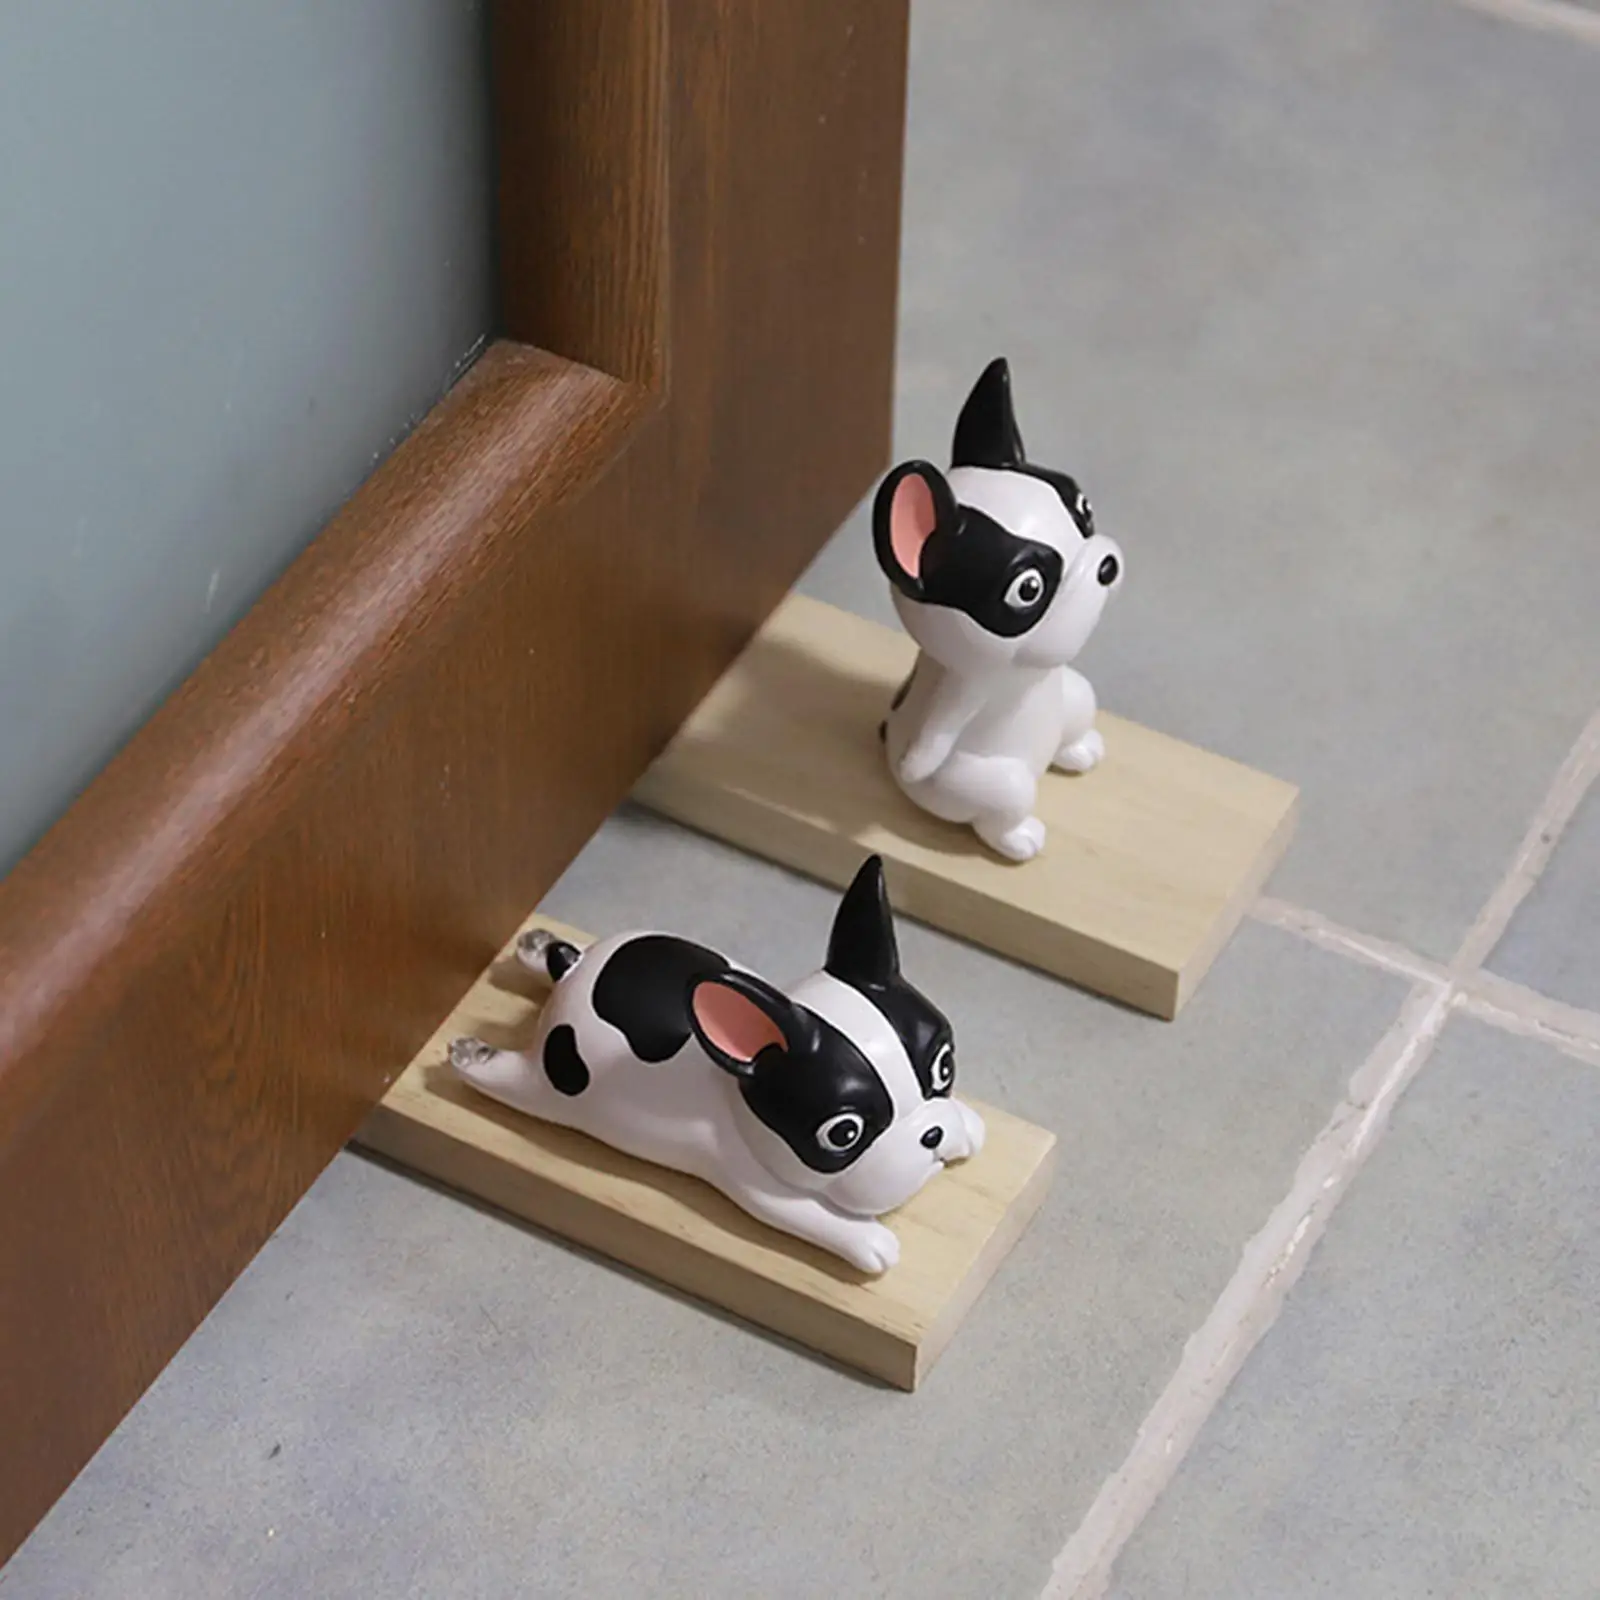 Bulldog Shape Door Stopper Doorways Slip Resistant Wood Base Wedge Door Stop for Baby Protection Home Office Decor Ornament